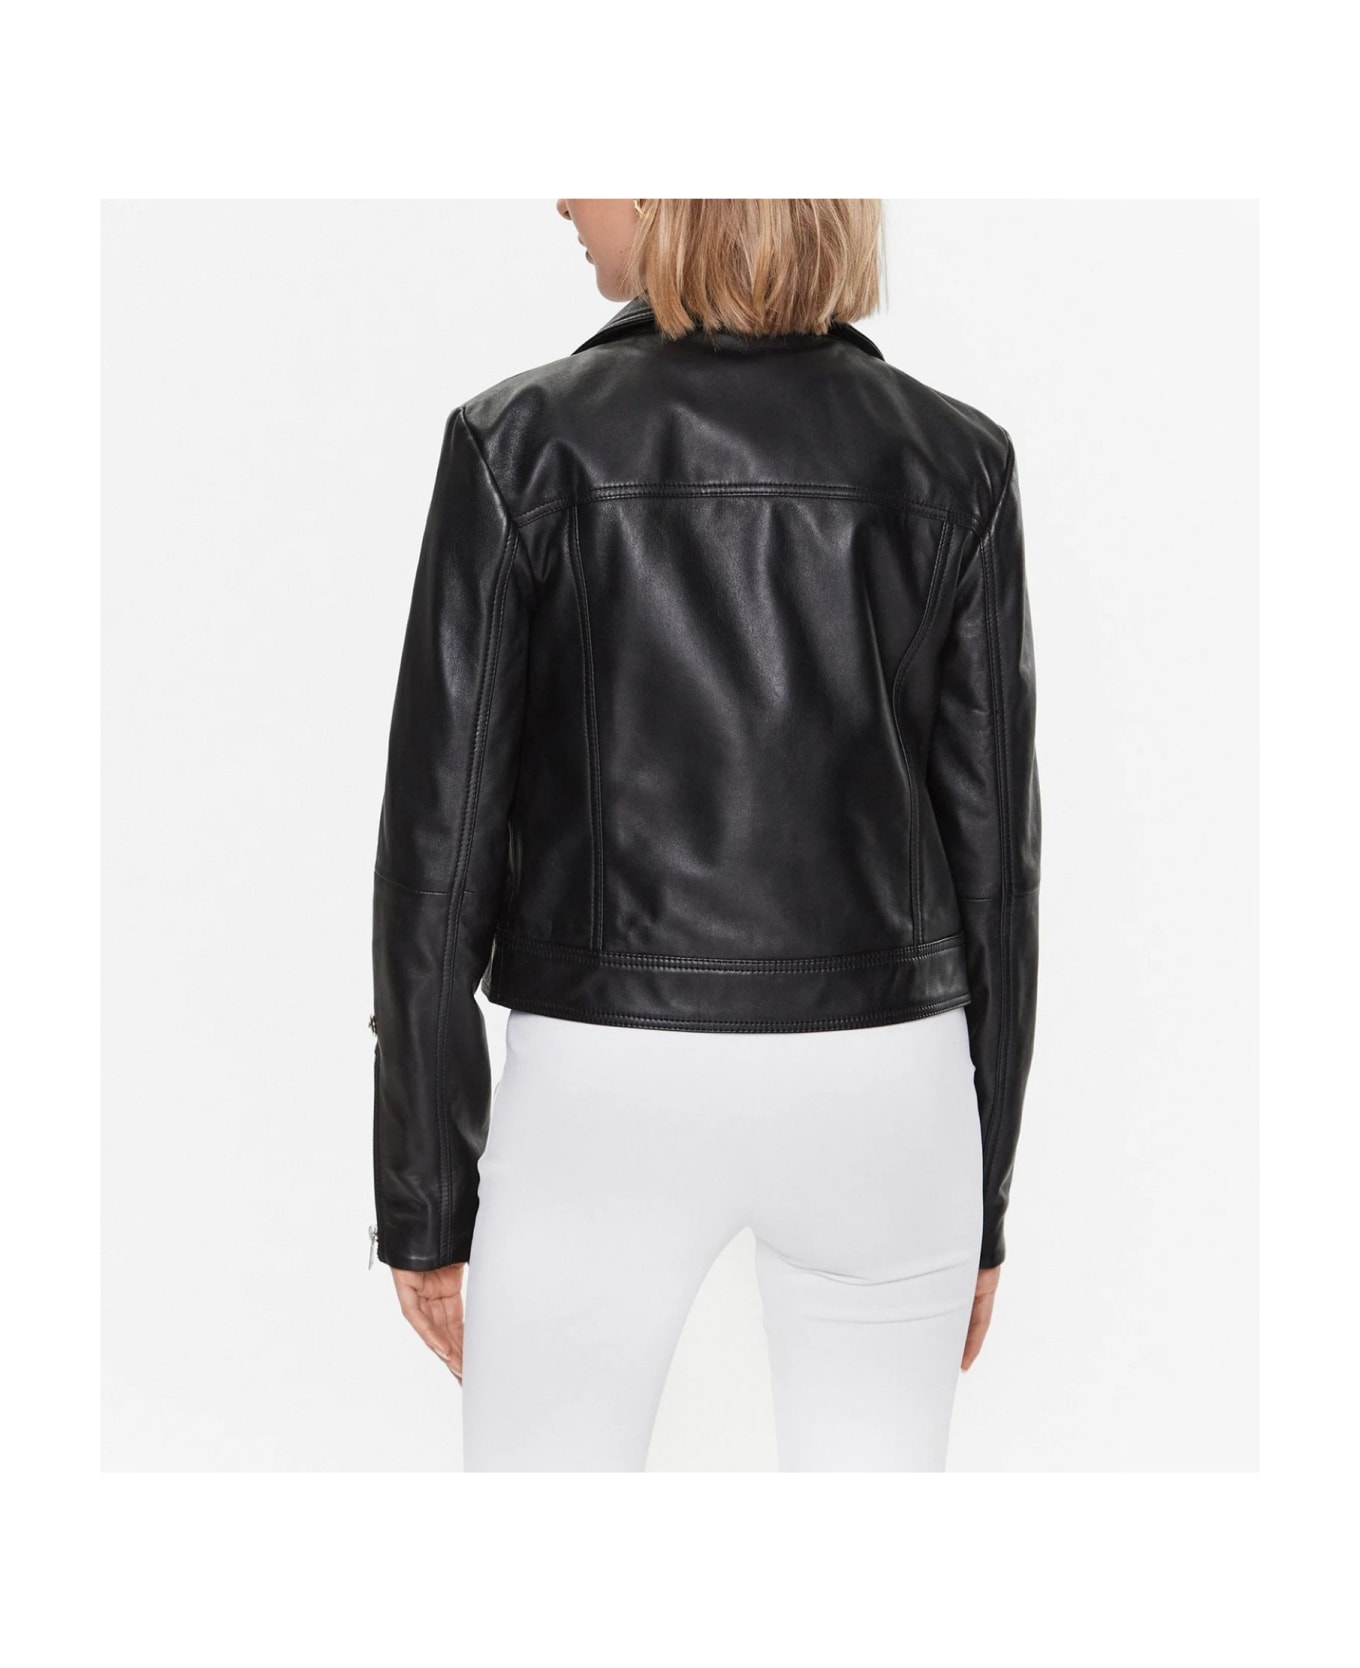 Just Cavalli Leather Jacket - Black レザージャケット